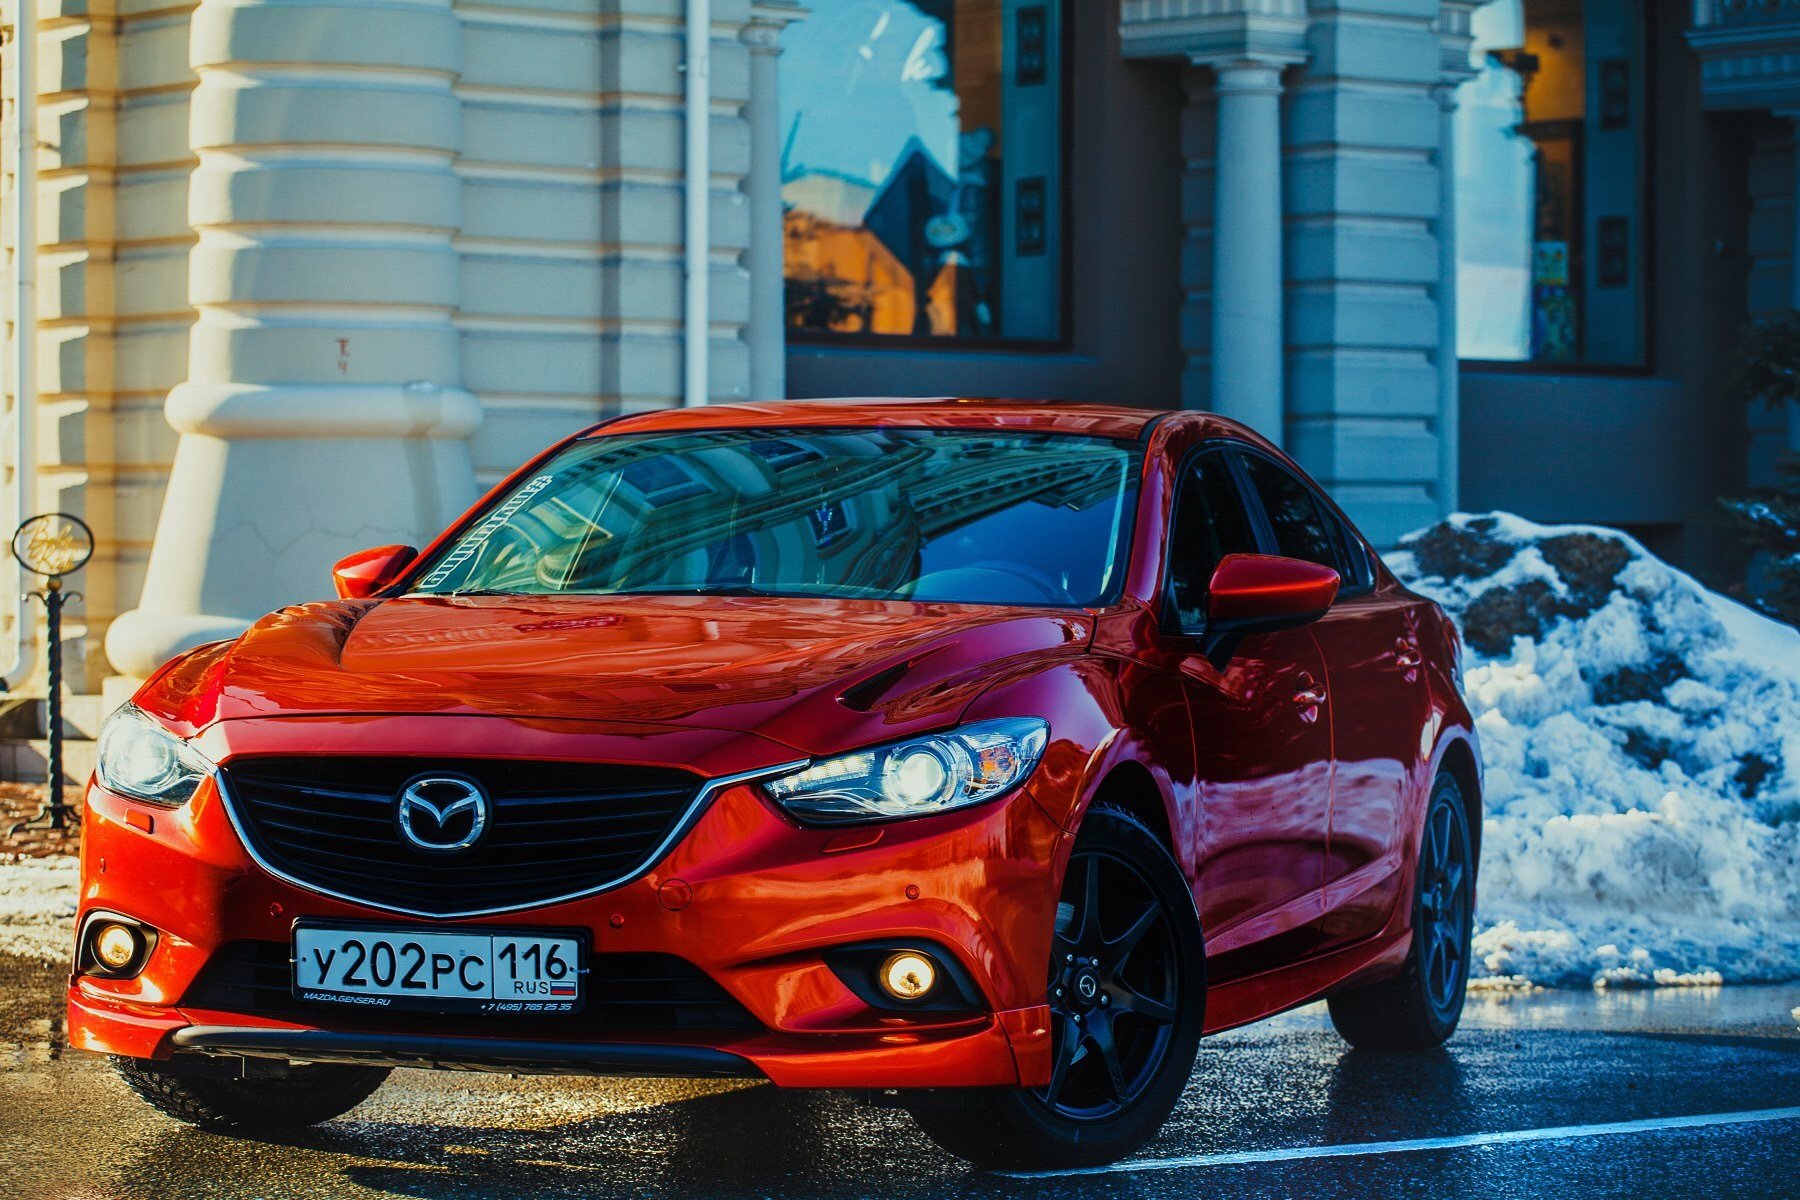 Mazda екатеринбург. Mazda 6 Red. Мазда 6 красная. Мазда 6 алая. Мазда 6 2016 красная.